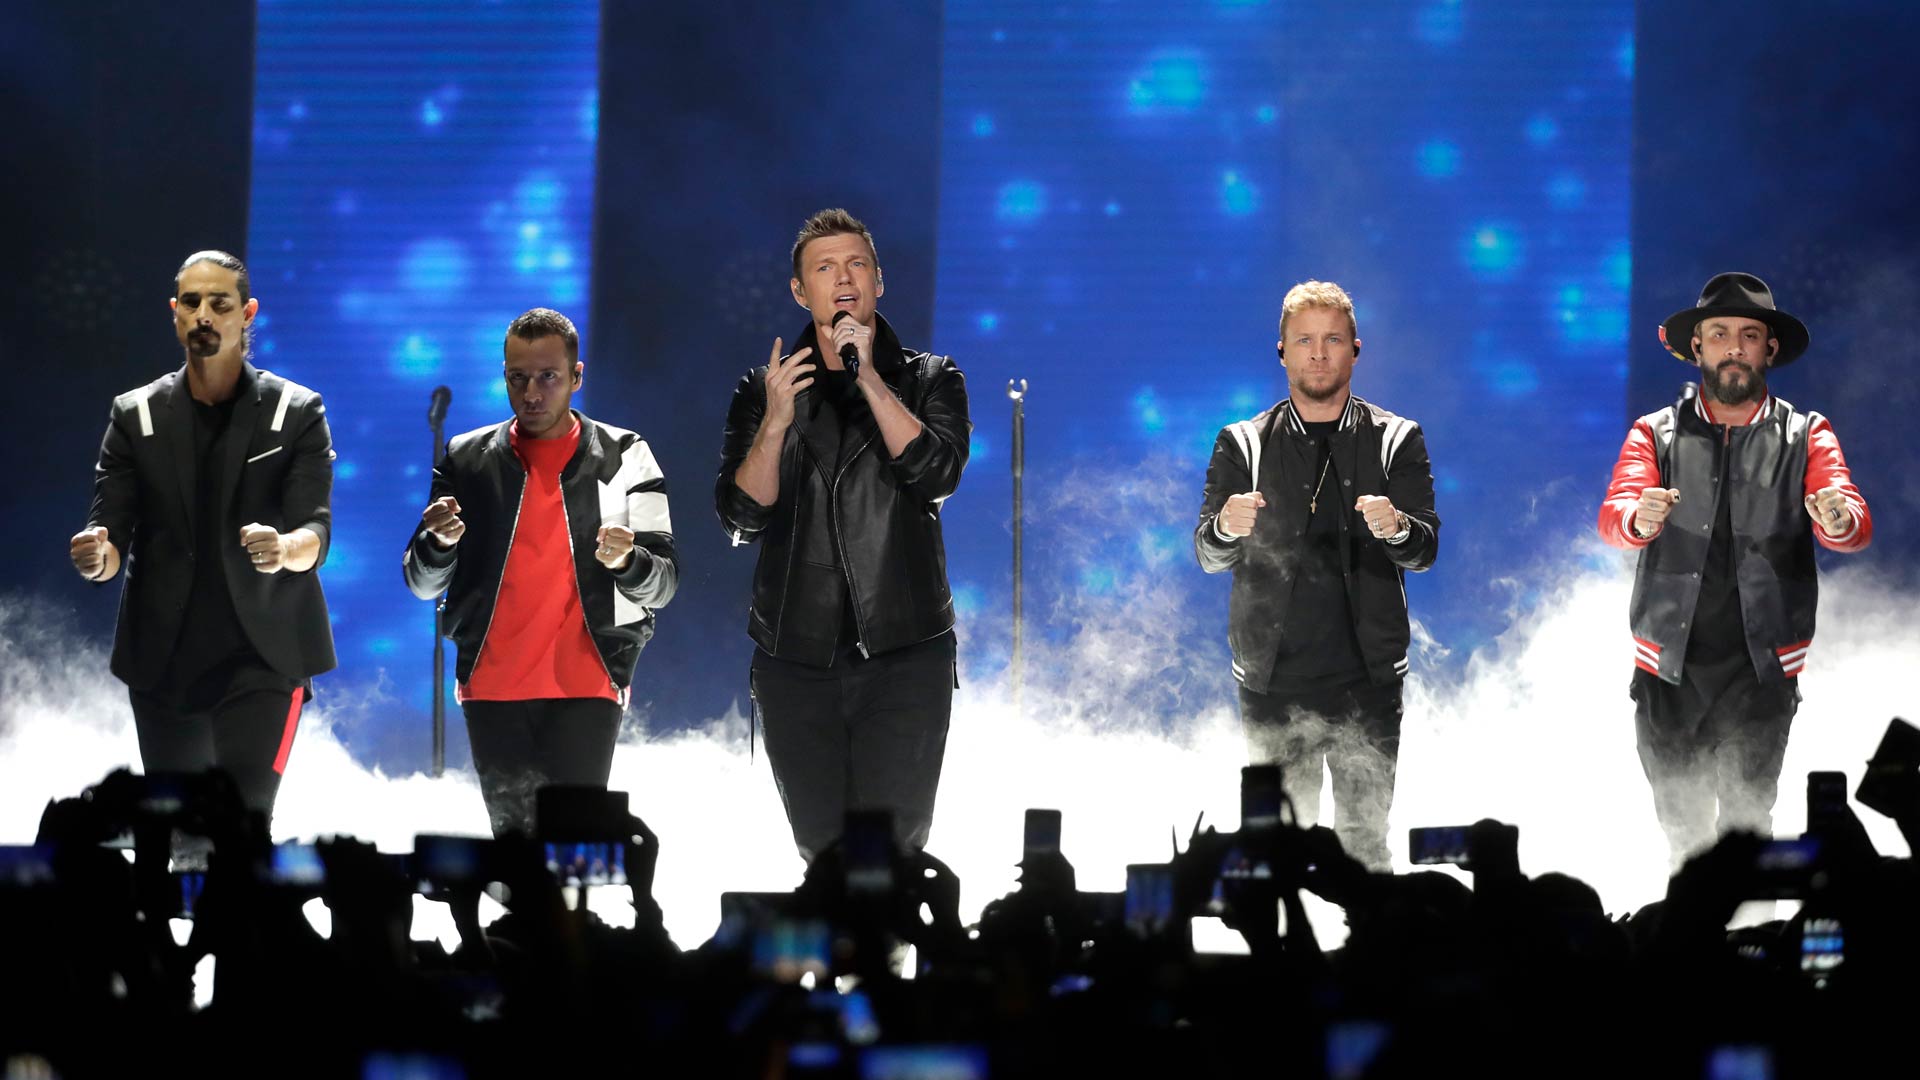 La fiebre por los Backstreet Boys vuelve a España en su concierto en Madrid